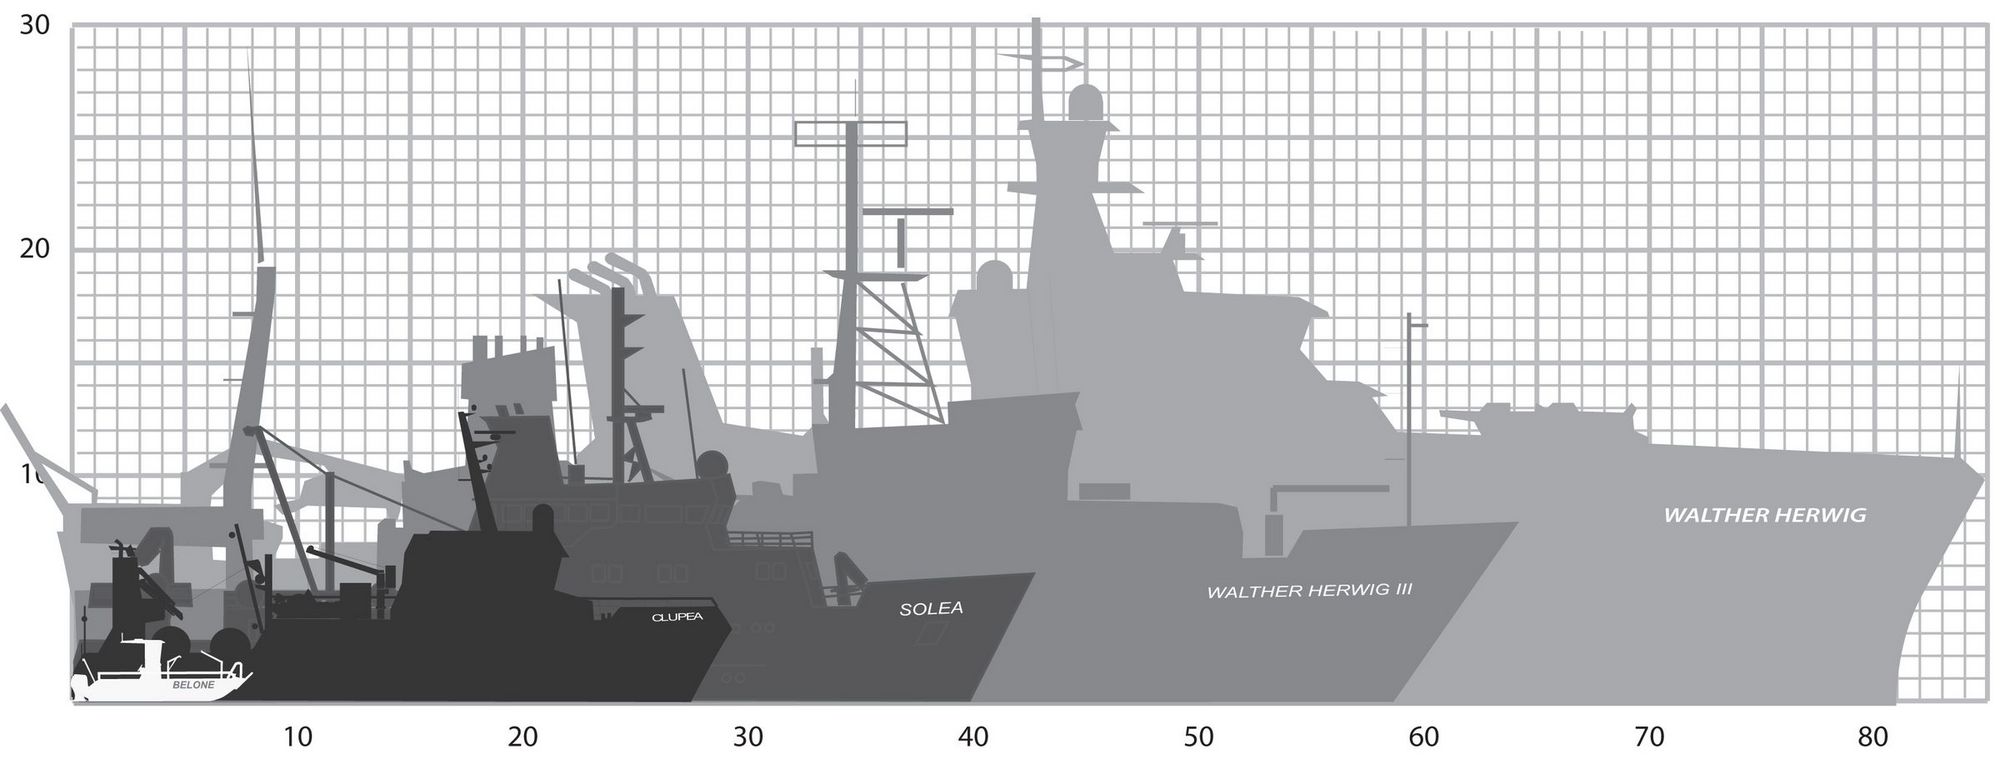 Die Schattenrrundrisse der Forschungsschiffe Belone, Clupea, Solea, Walther Herwig III und Walther Herwig Neubau sind voreinanger gestellt, um ihre unterschiedlichen Längen zu veranschaulichen.